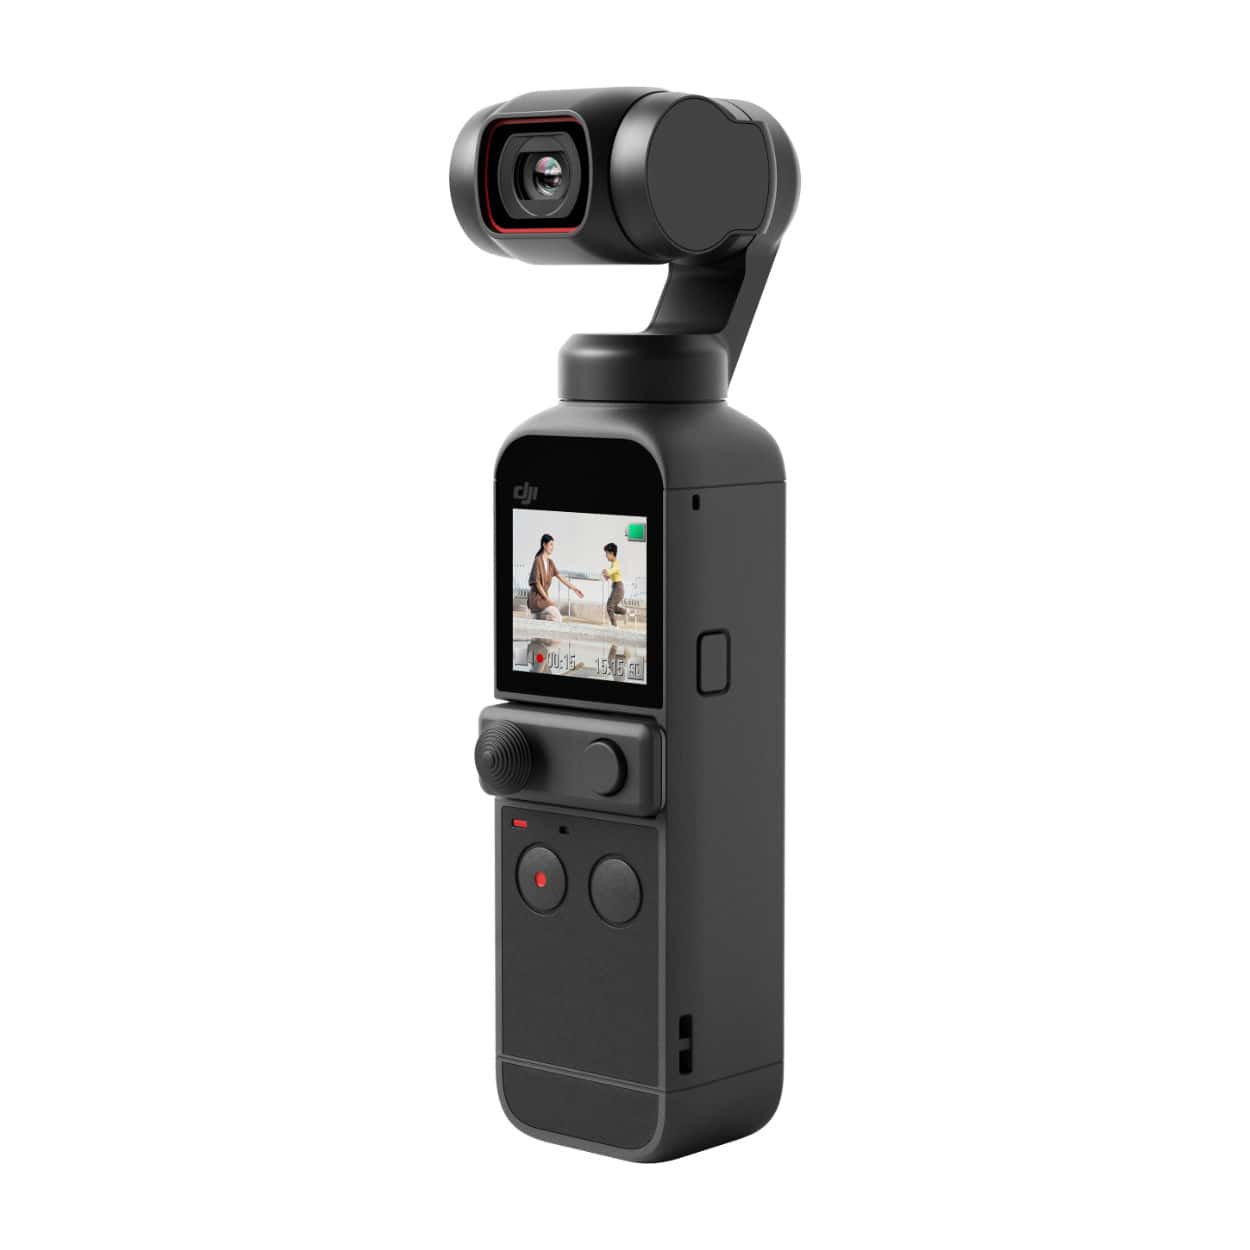 DJI Pocket 2 gimbal camera